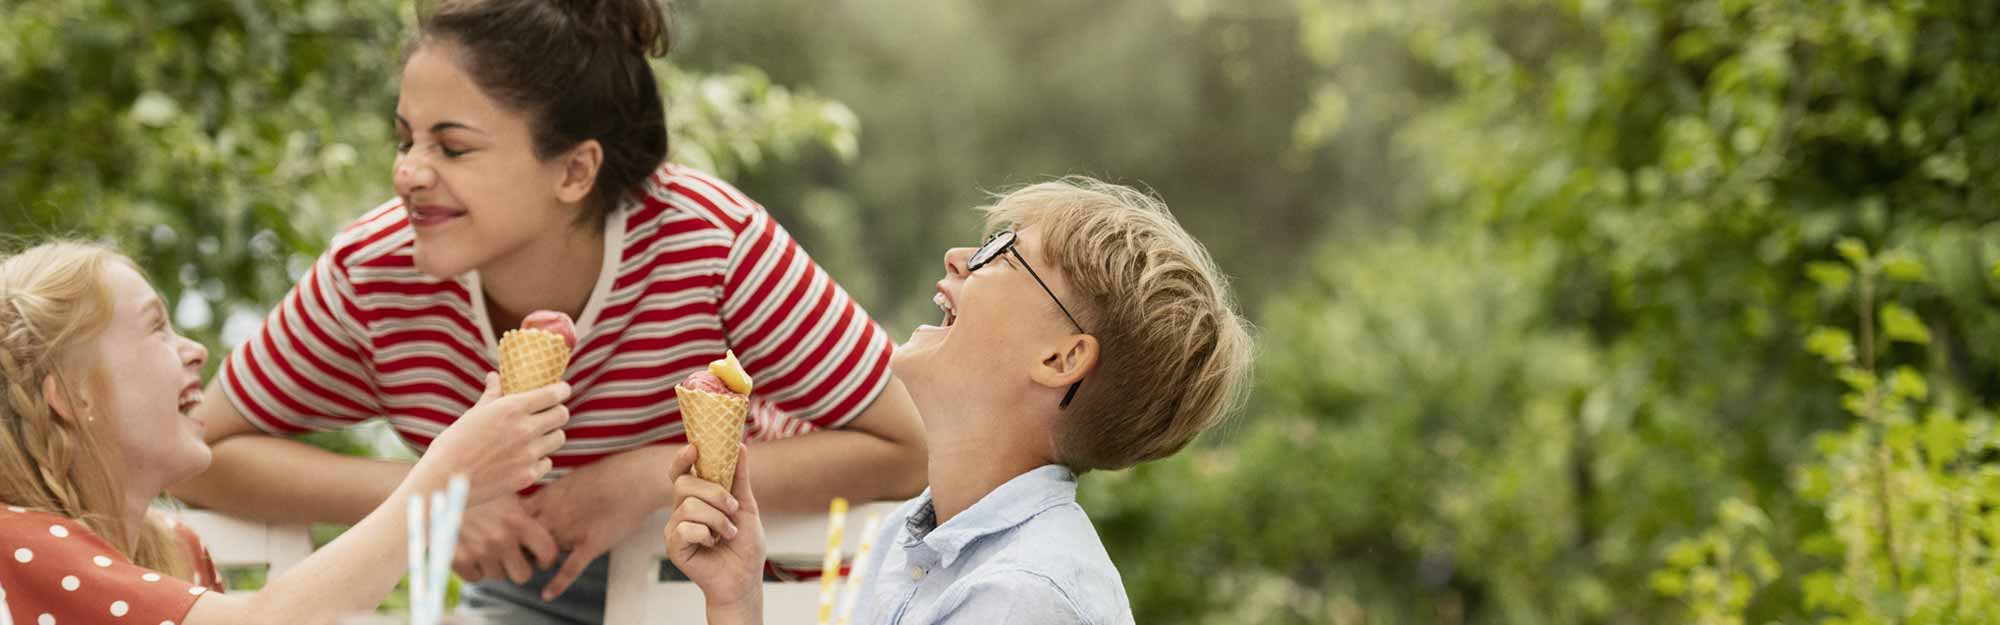 Två barn och en kvinna skrattar och äter glasstrutar i trädgården